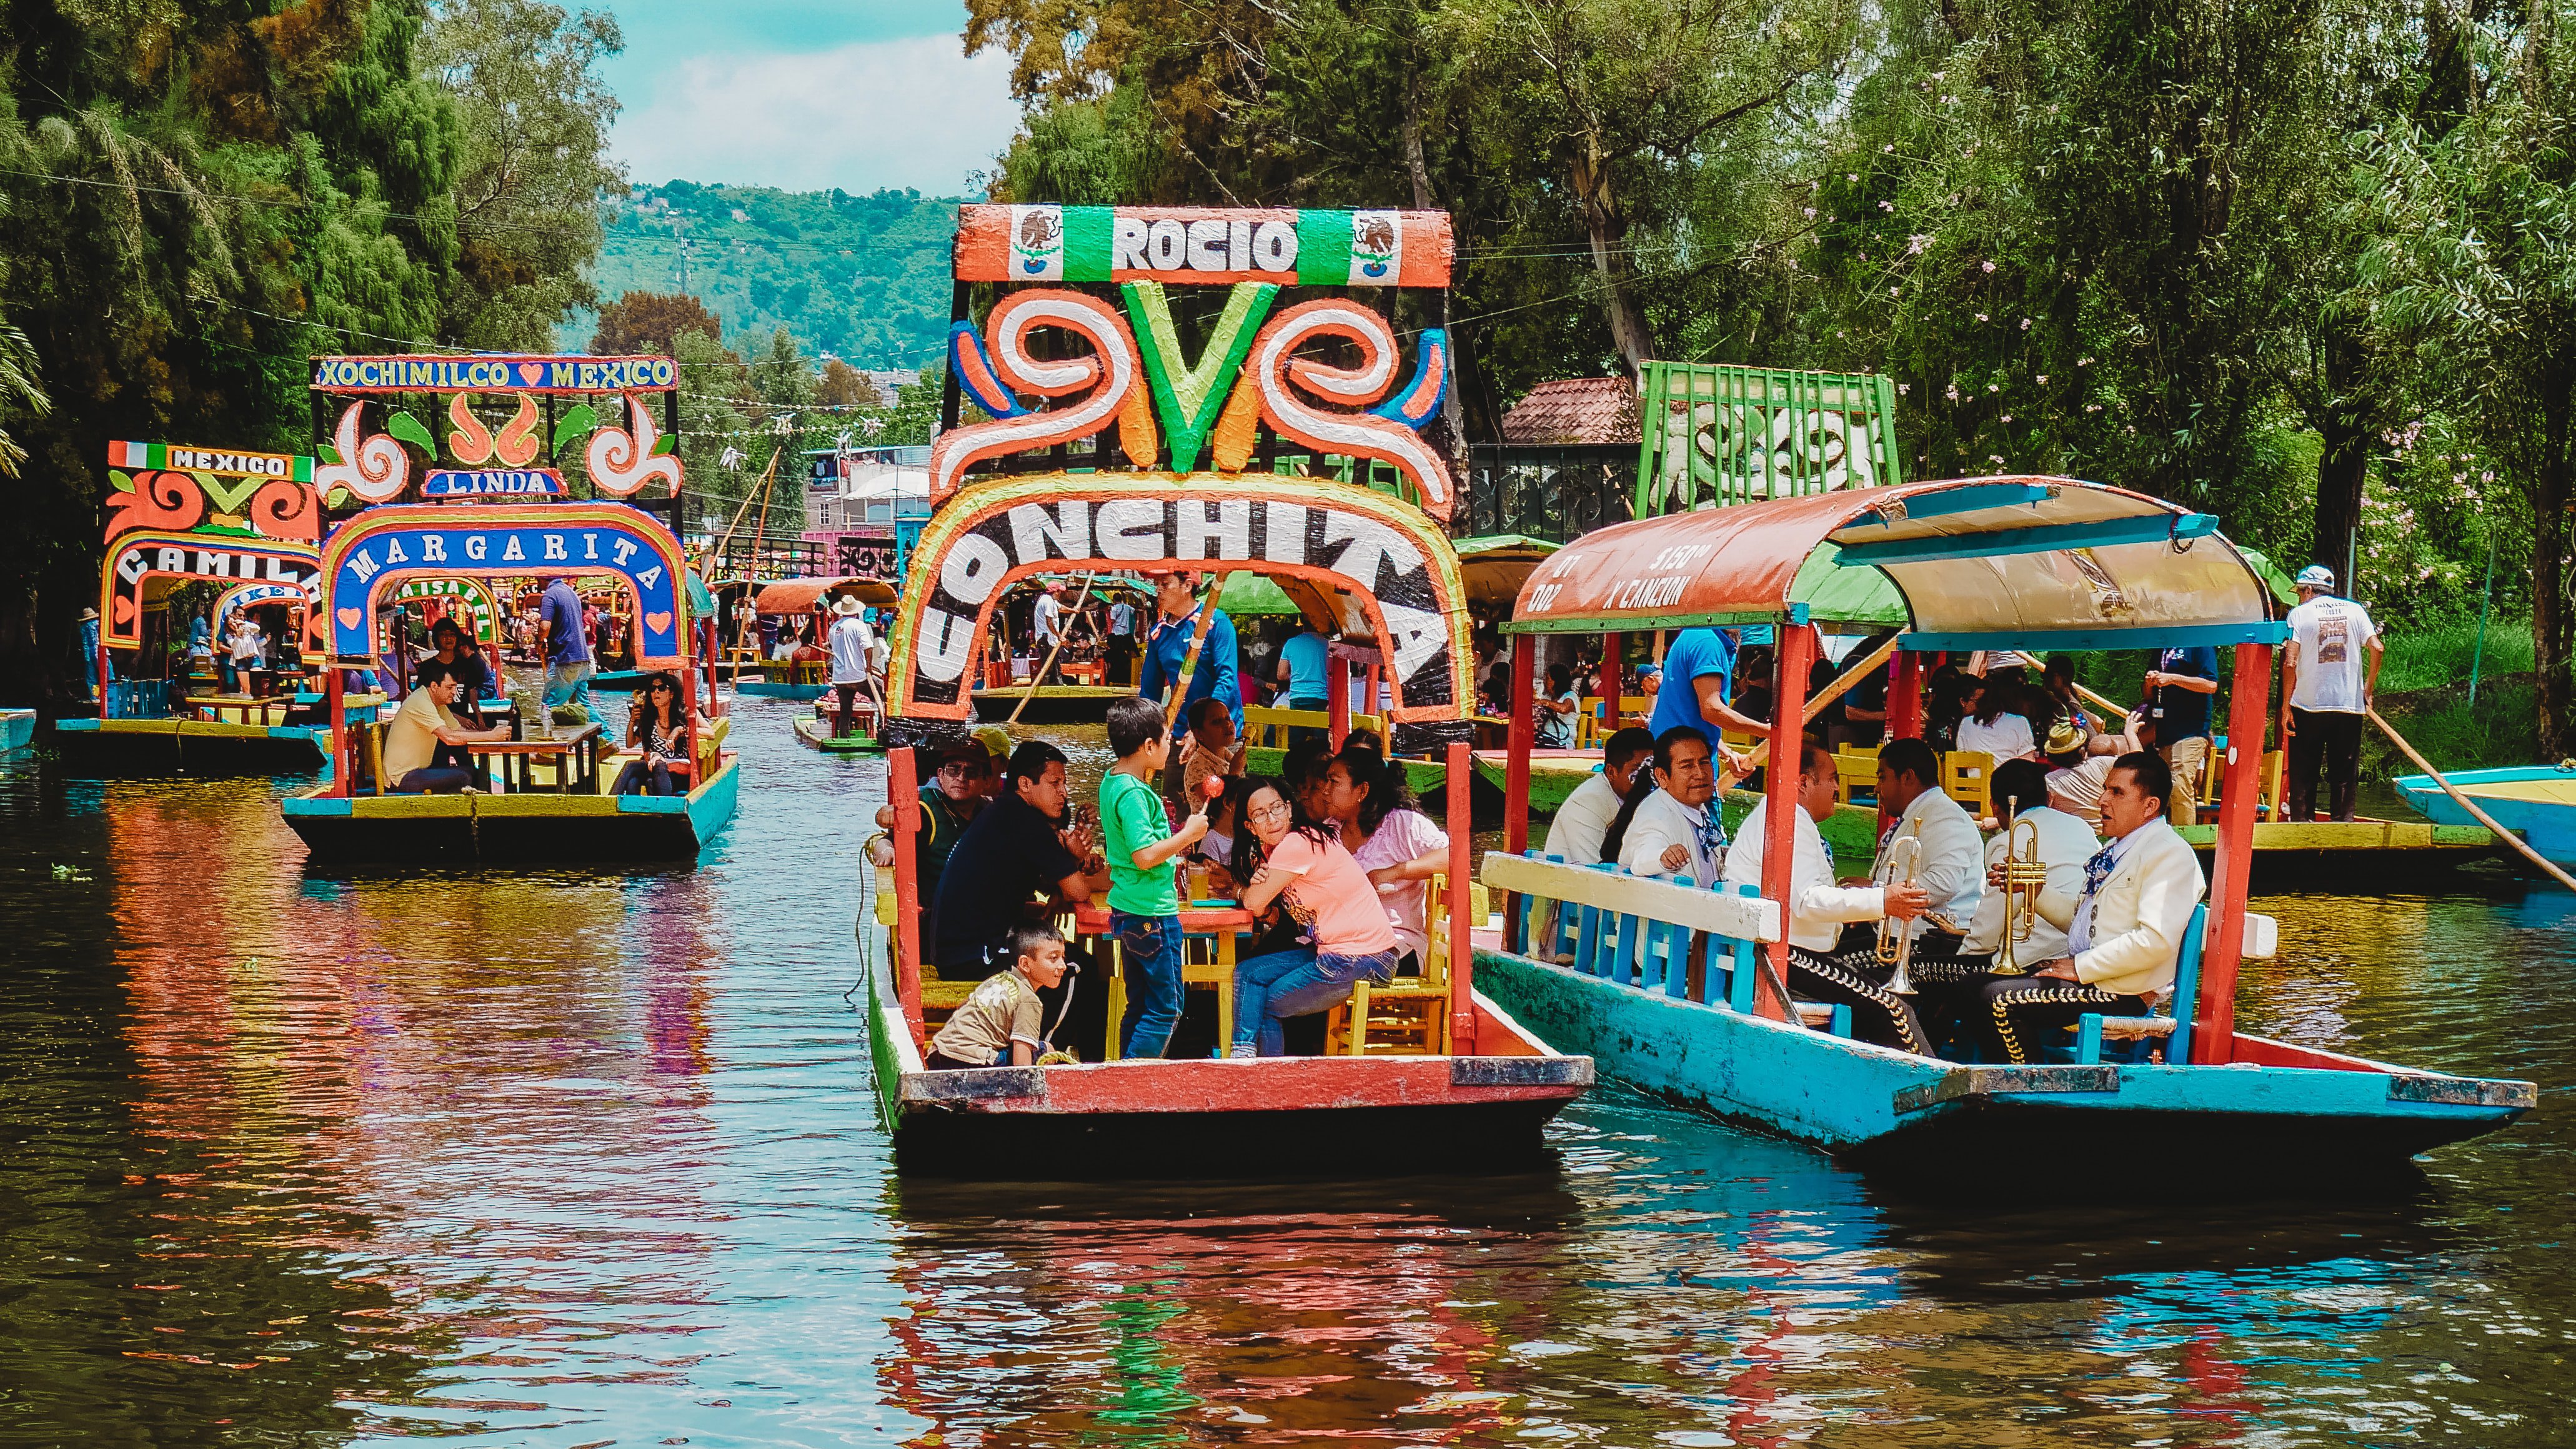 Xochimilco Mexico City